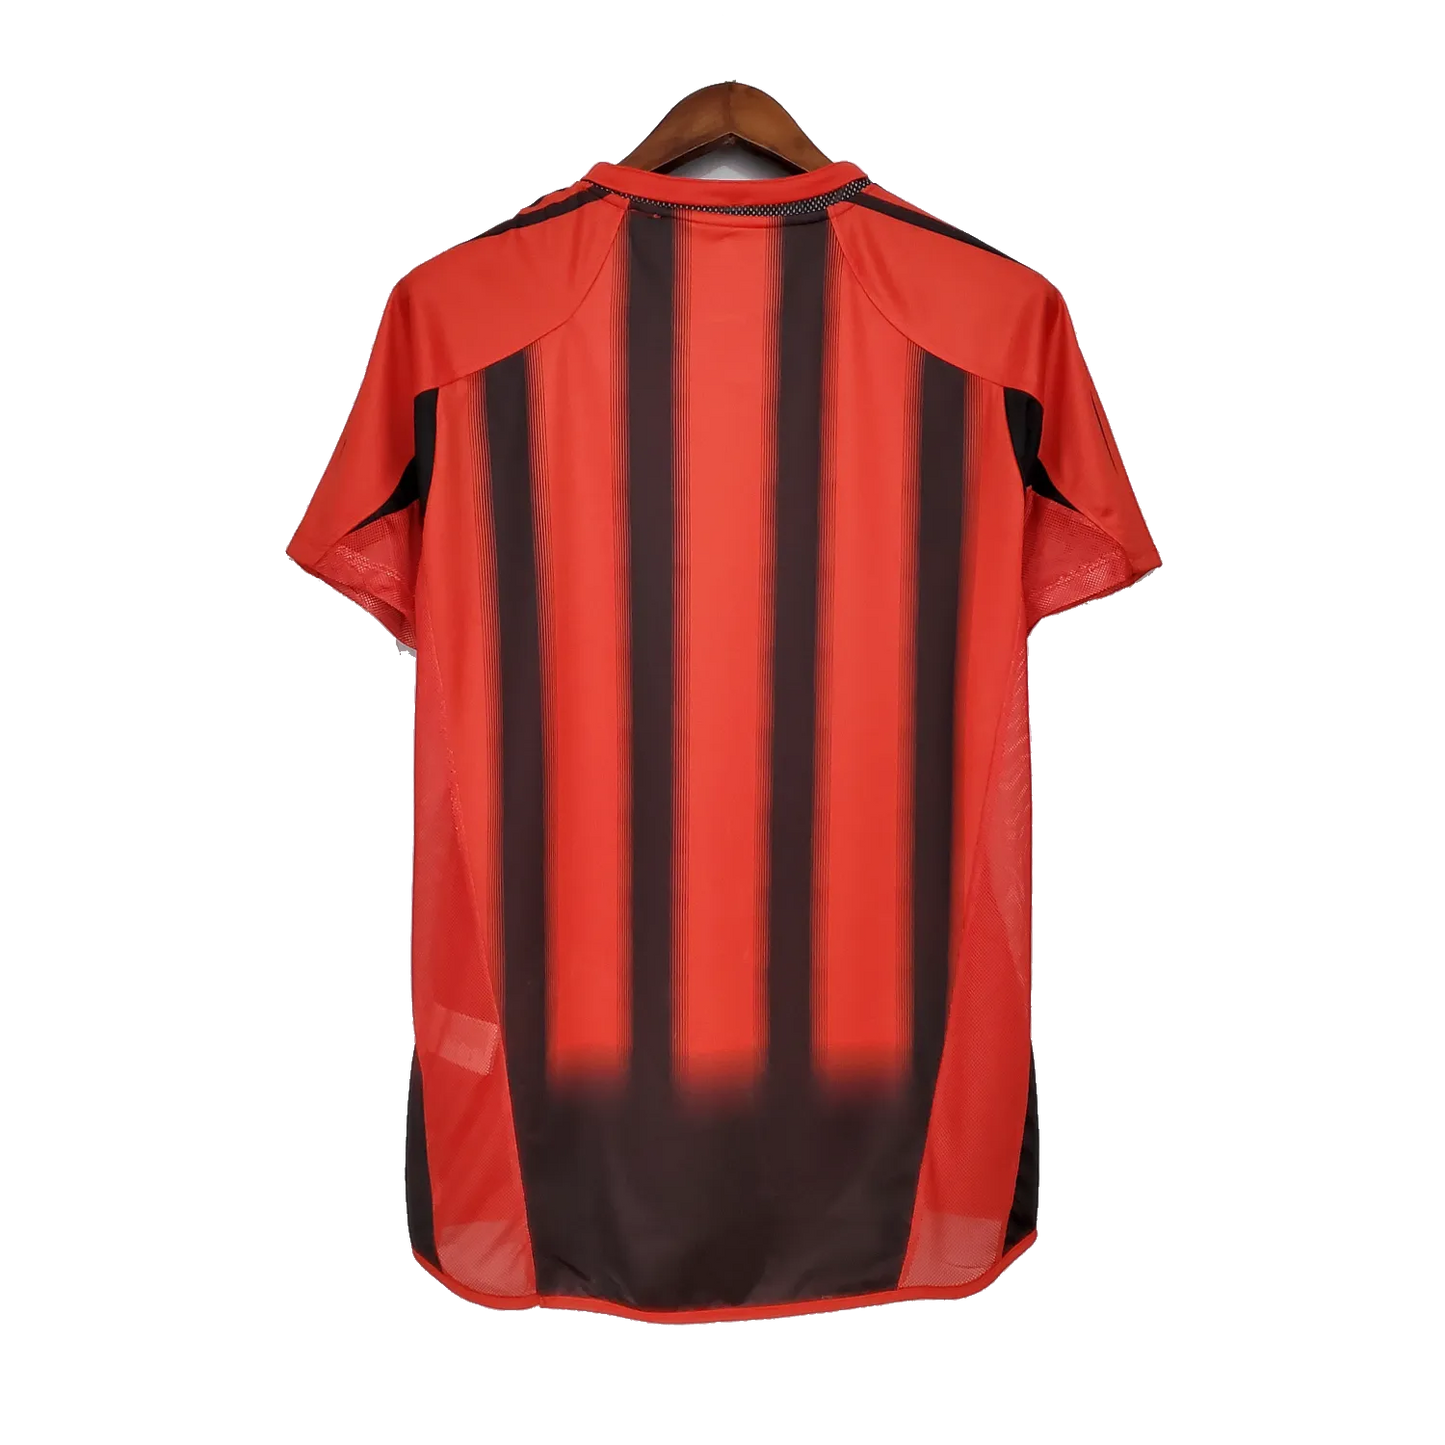 AC Milan Retro Home Jersey 2004/05 Red & Black Men's